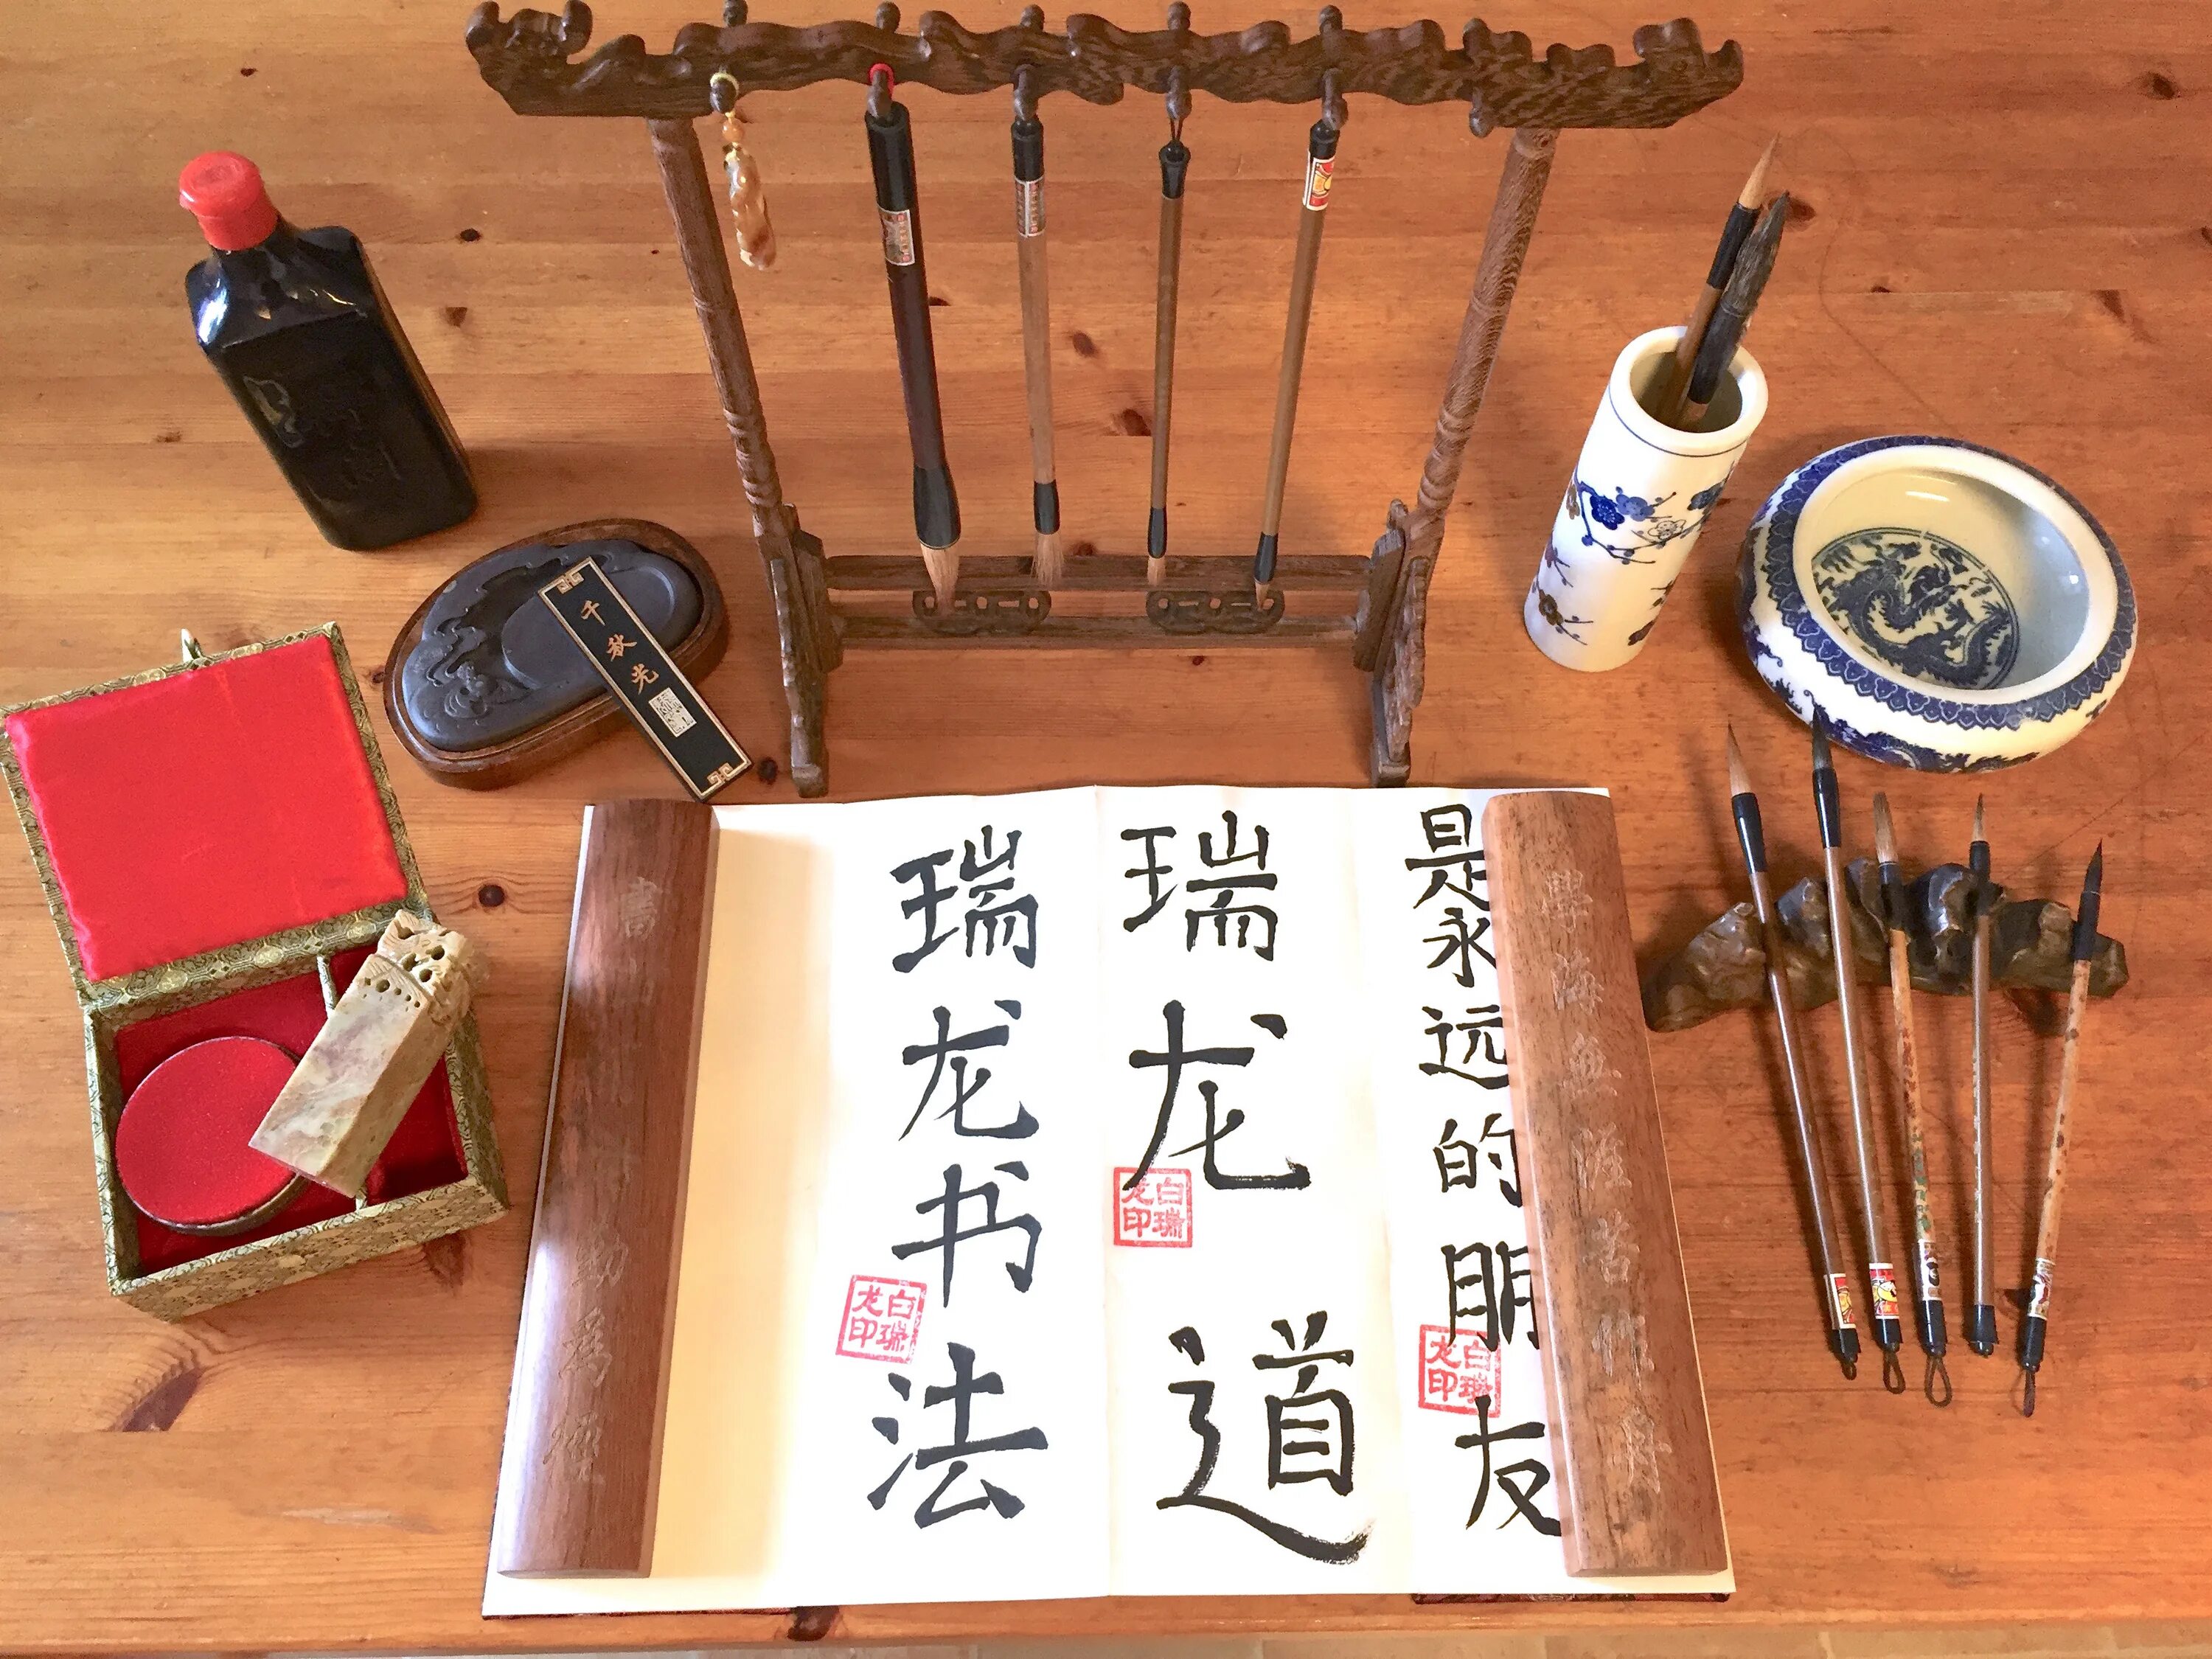 Инструменты для китайской каллиграфии. Китайская каллиграфия. Древняя китайская каллиграфия. Каллиграфия на предметах. Тексты древнего китая